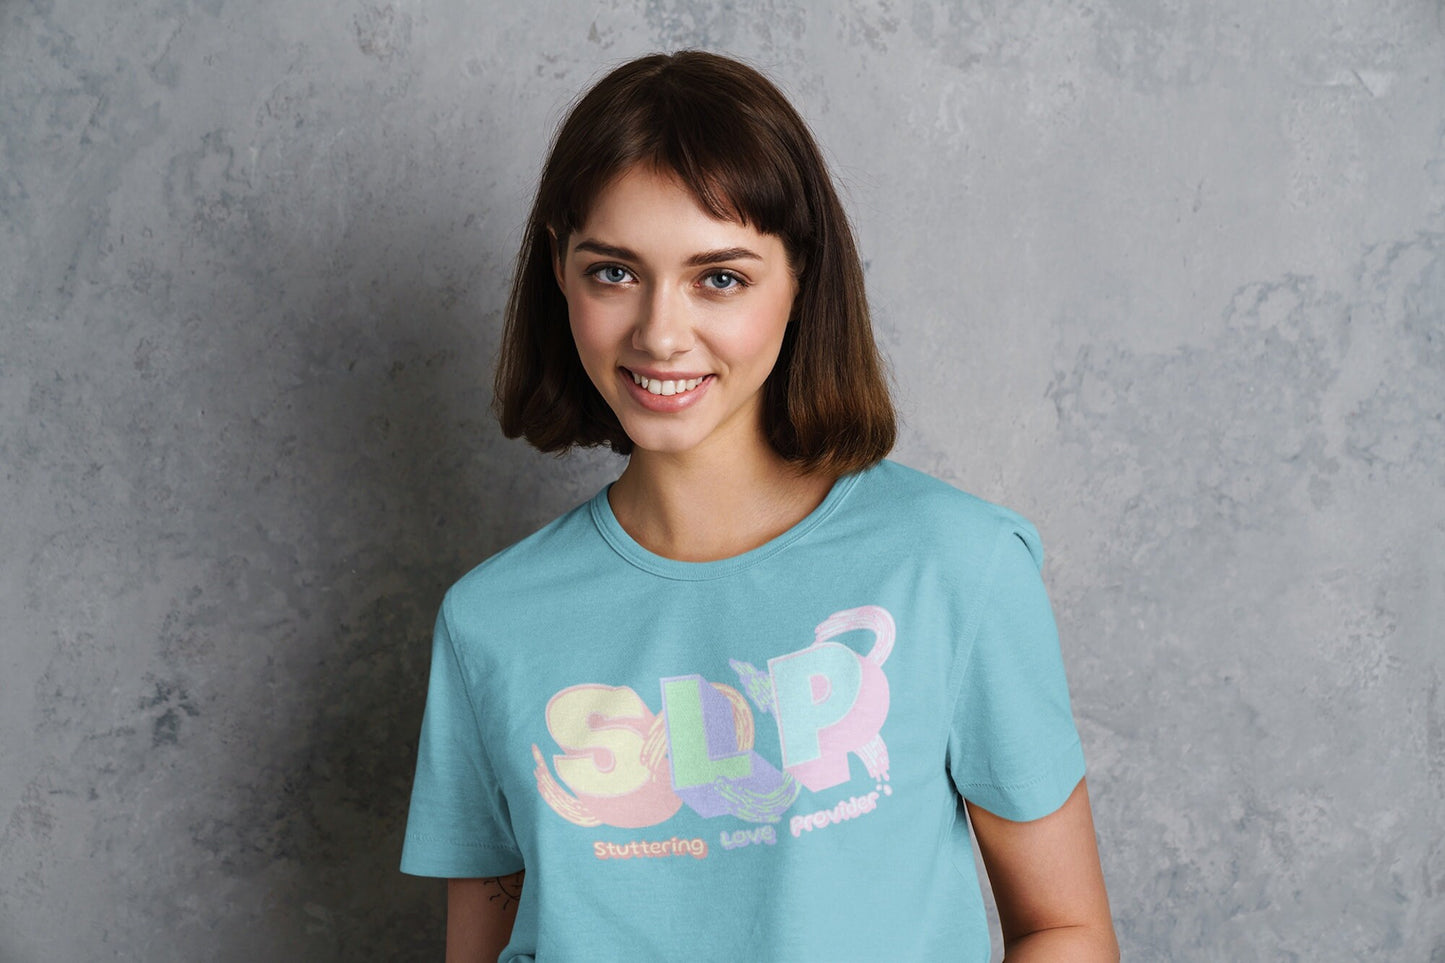 SLP Stuttering Love Provider Pastel T-shirt